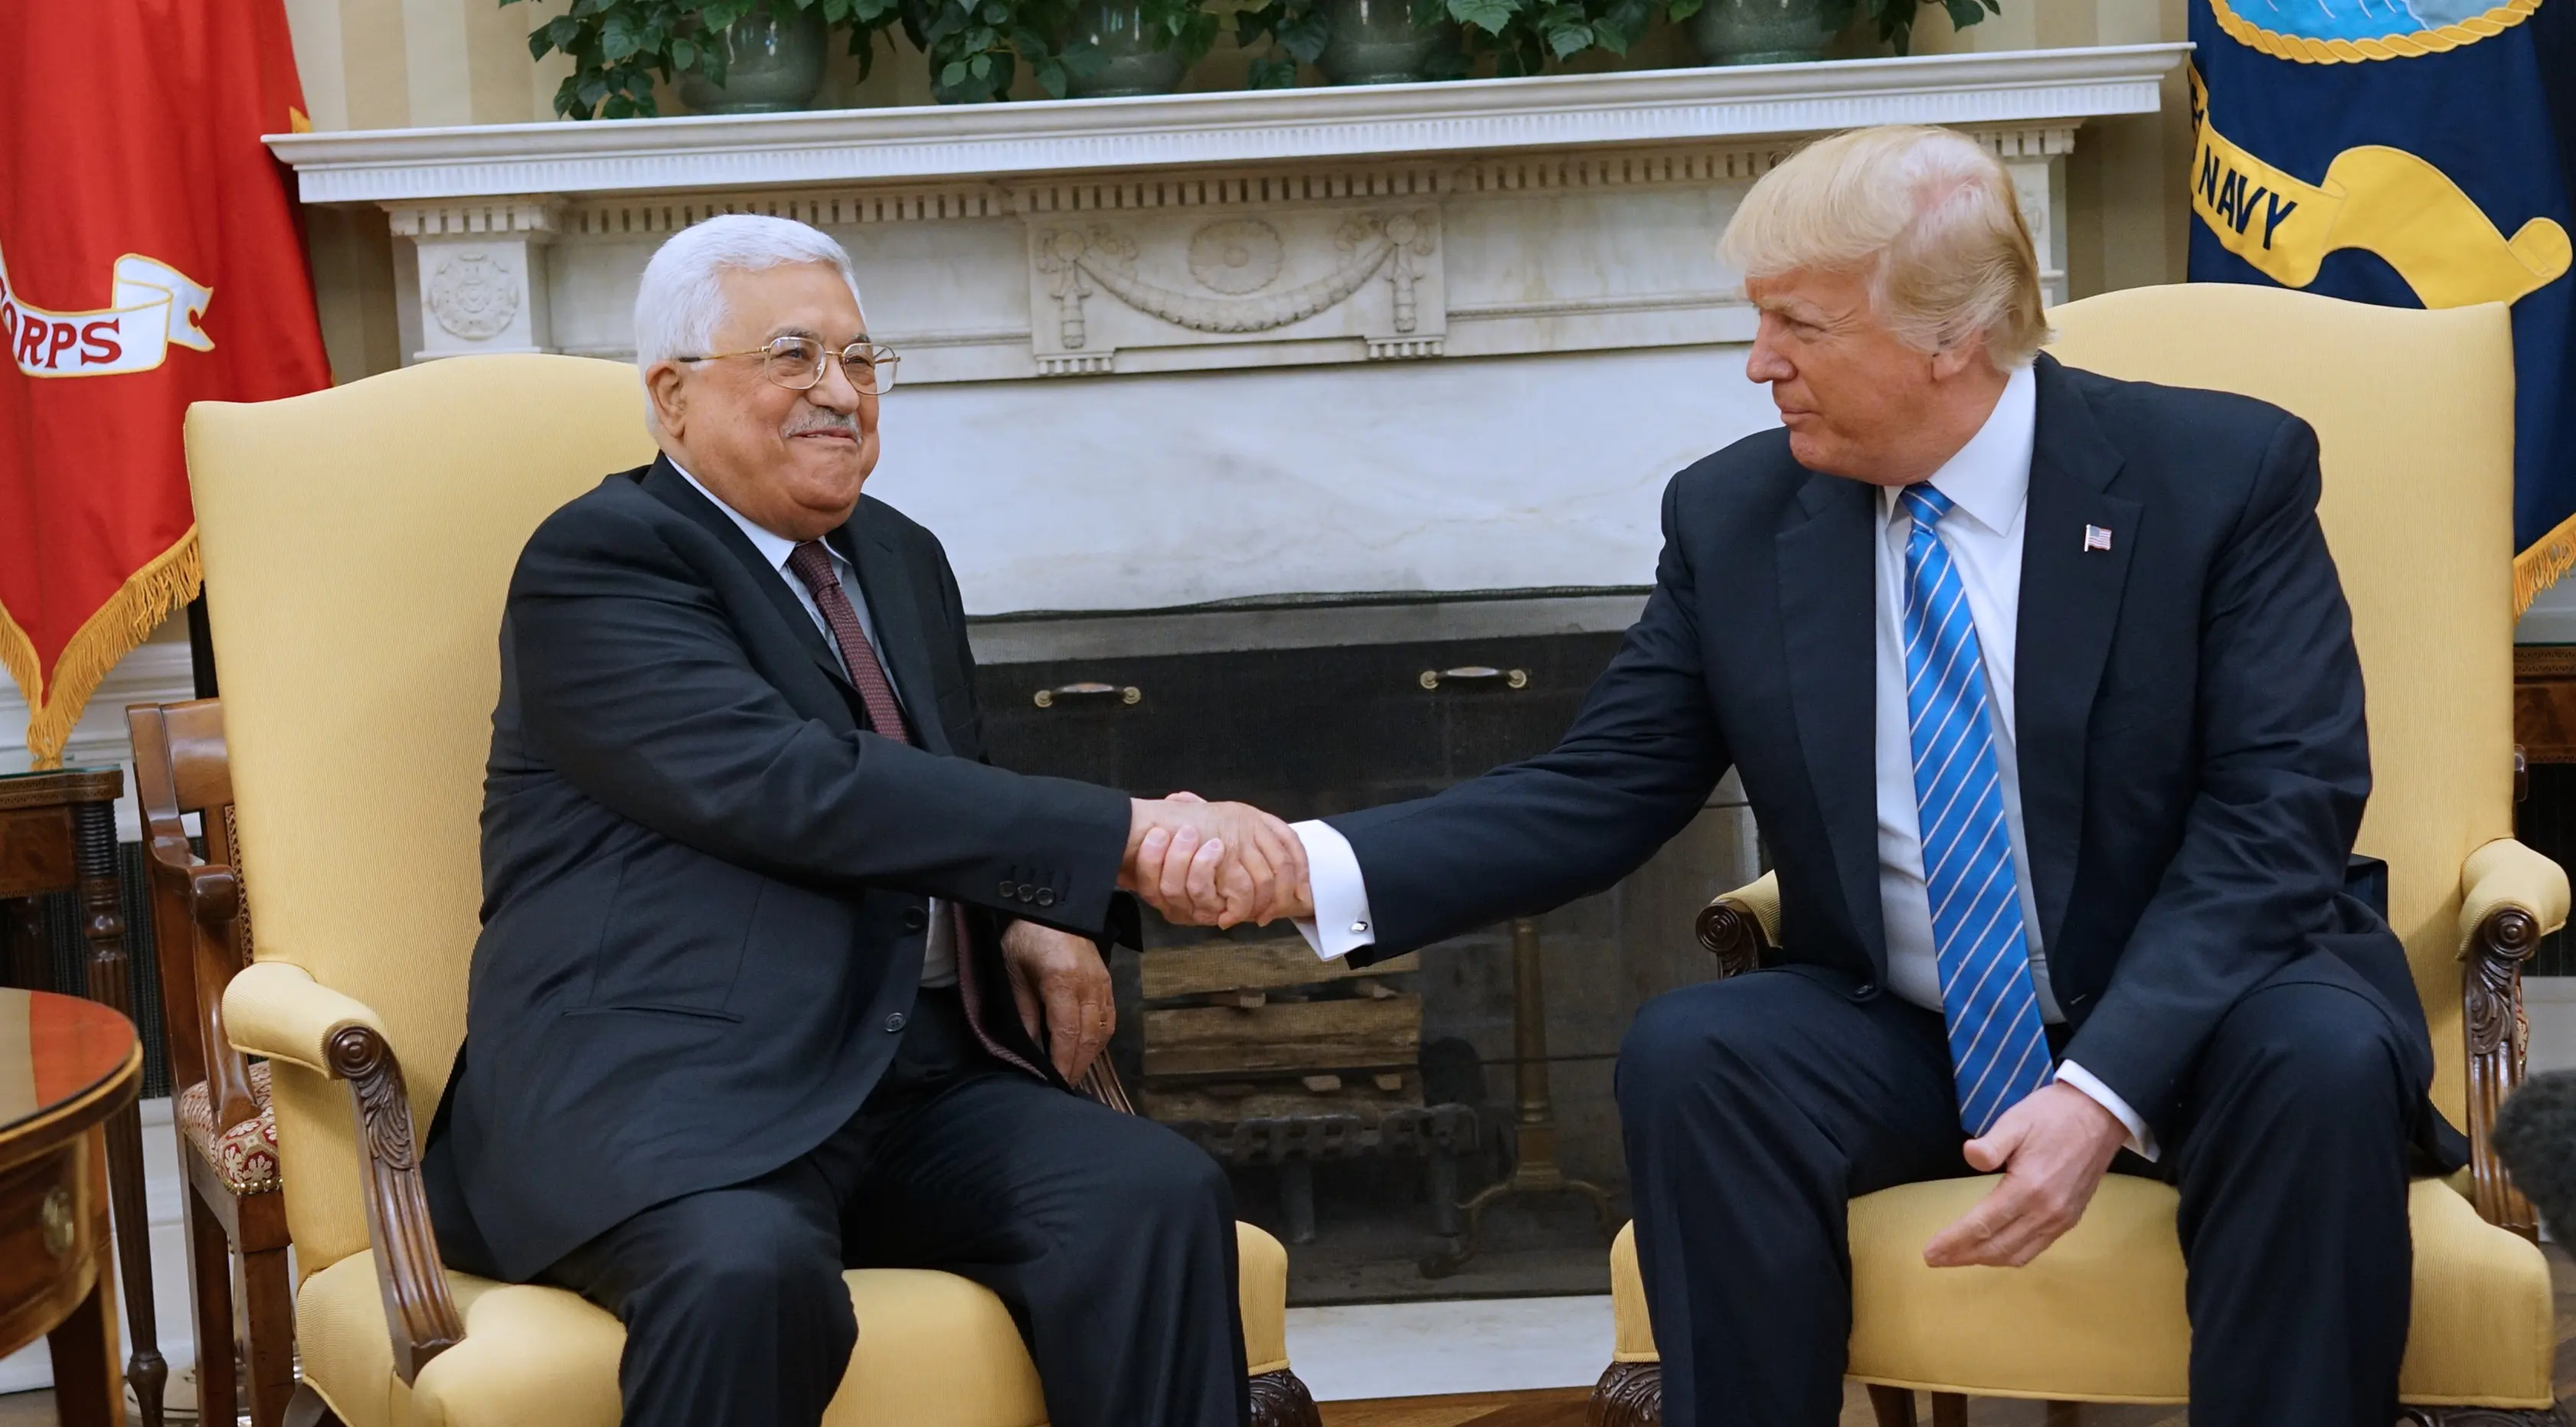 Presiden AS, Donald Trump berjabat tangan dengan Presiden Palestina, Mahmoud Abbas saat melakukan pertemuan di Gedung Putih, Washington, AS (3/5). (AFP Photo/Mandel Ngan)